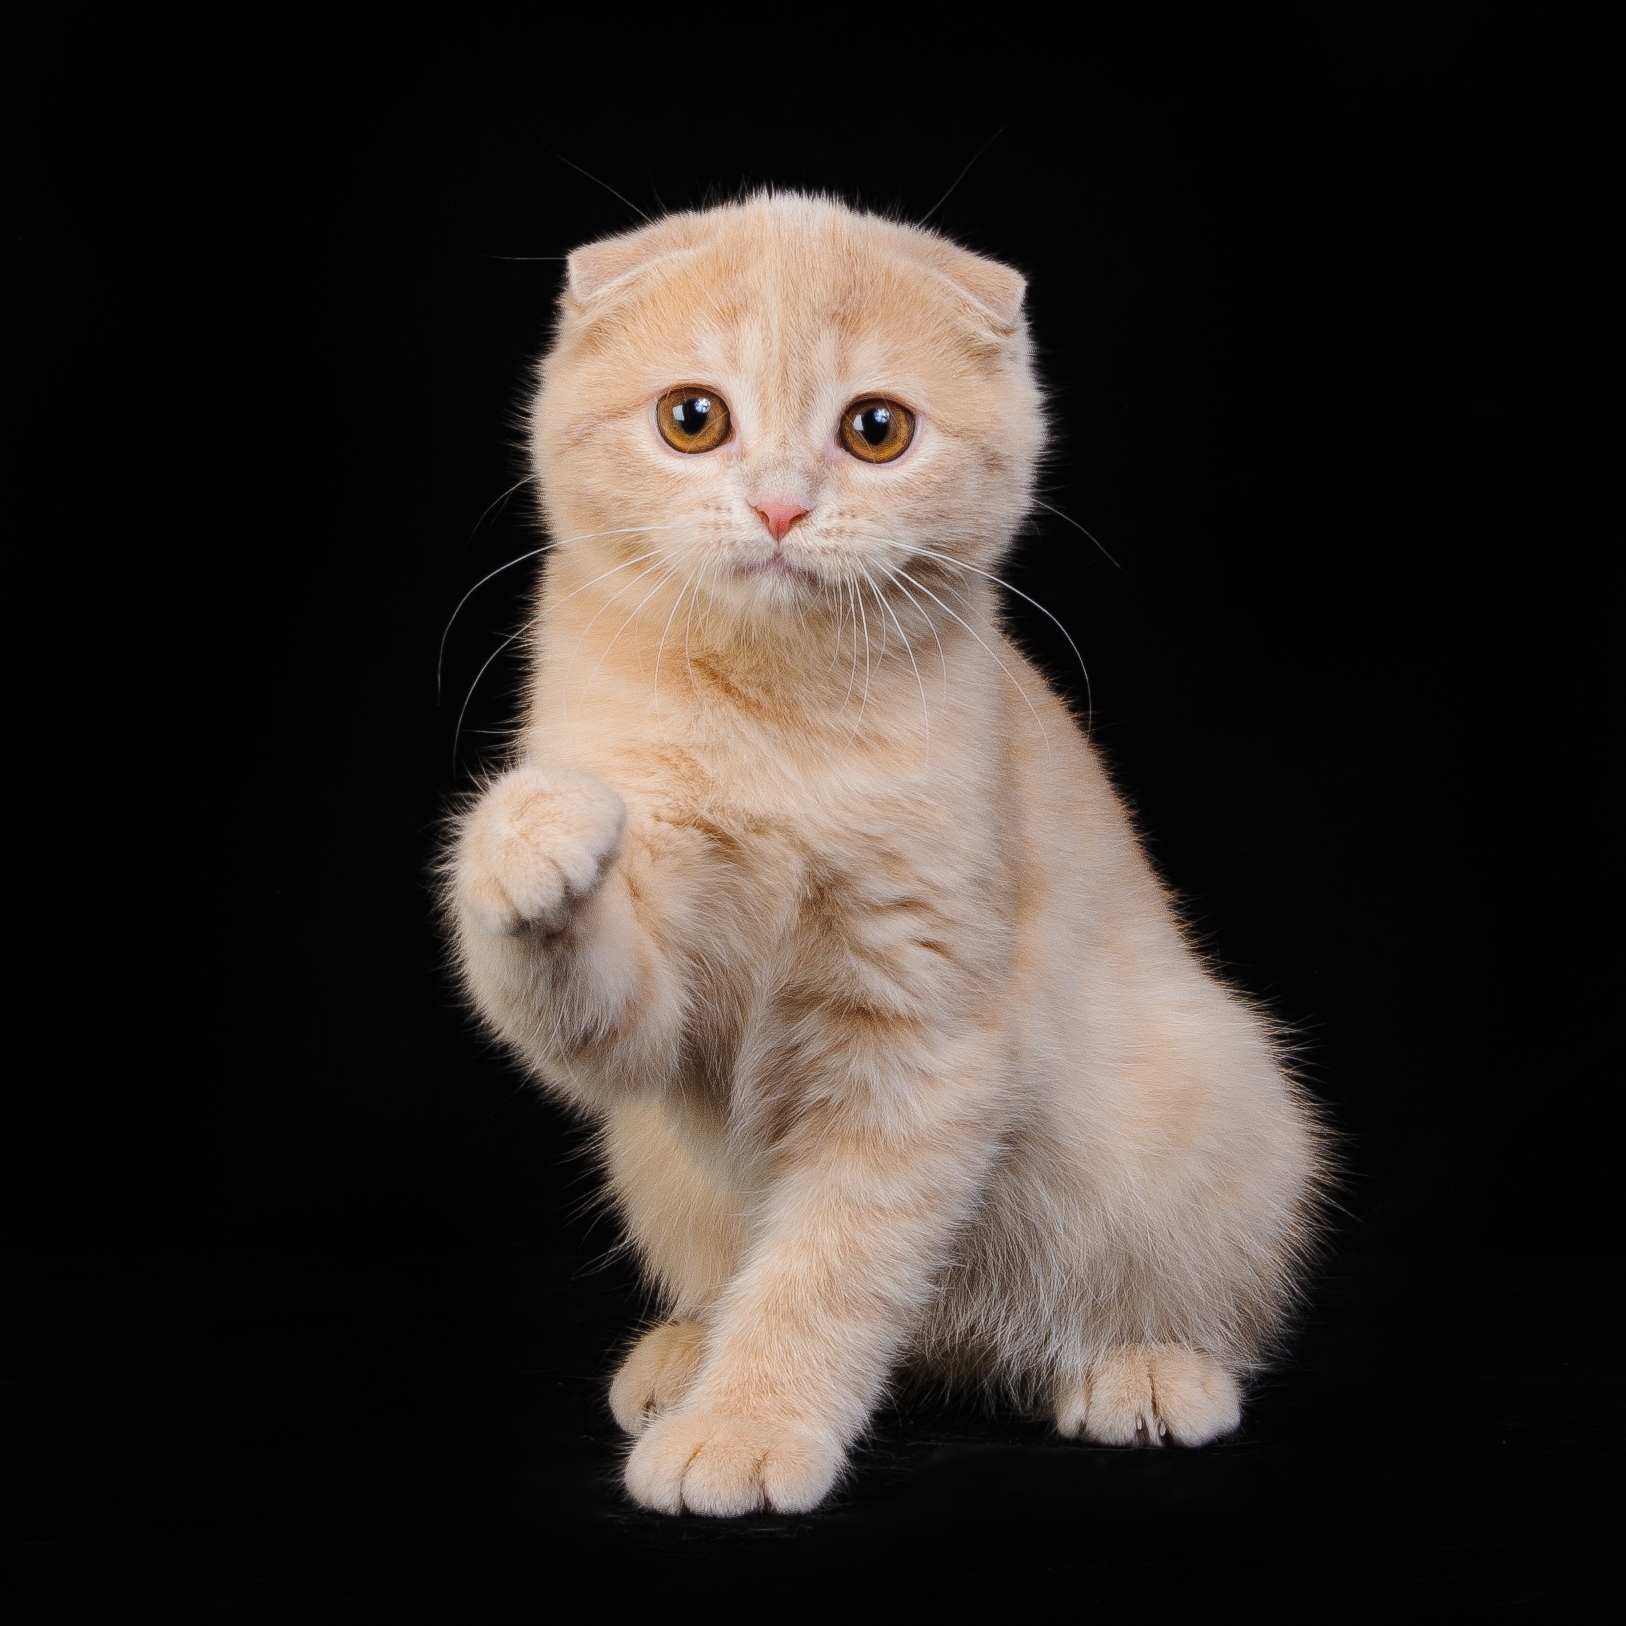 Шотландская вислоухая кошка бежевая - картинки и фото koshka.top